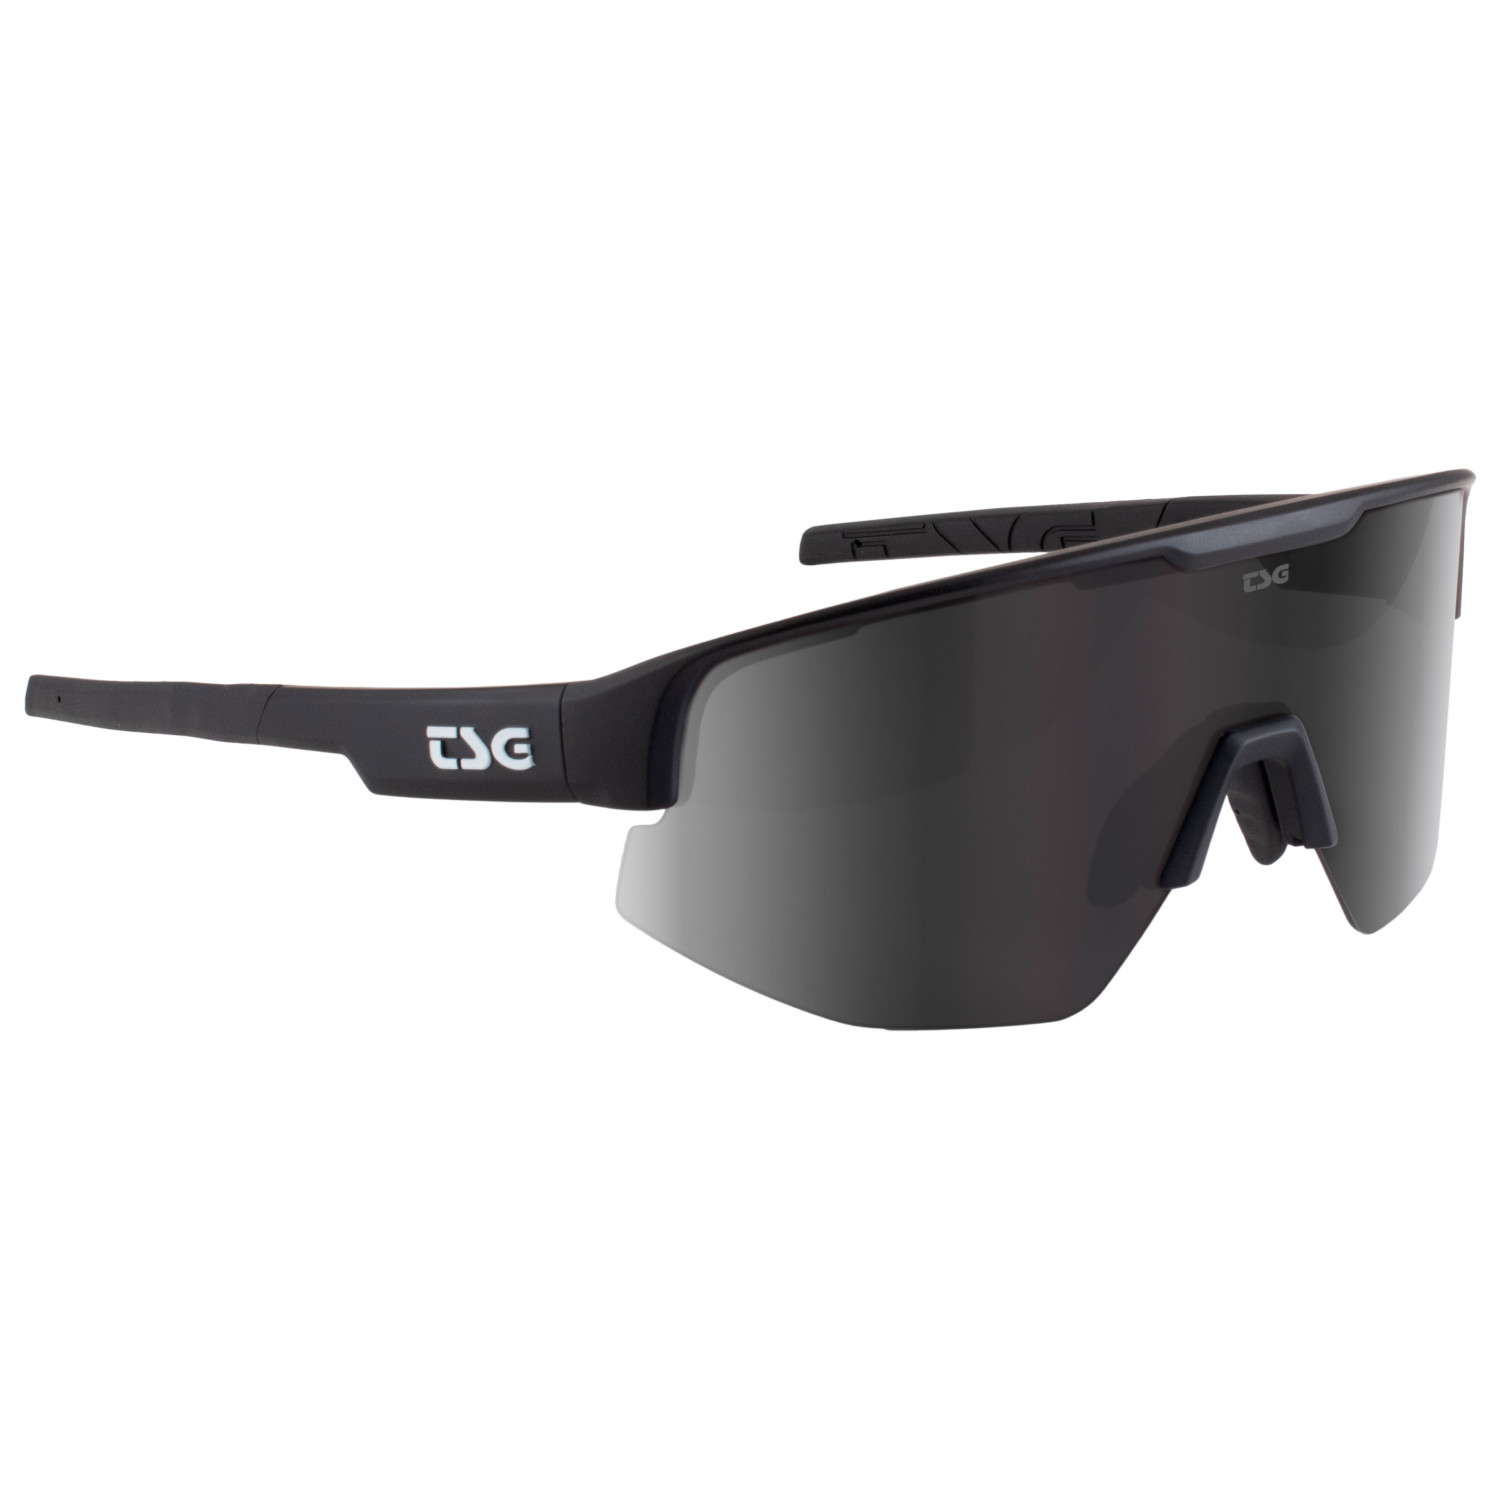 Велосипедные очки Tsg Loam Sunglasses, черный